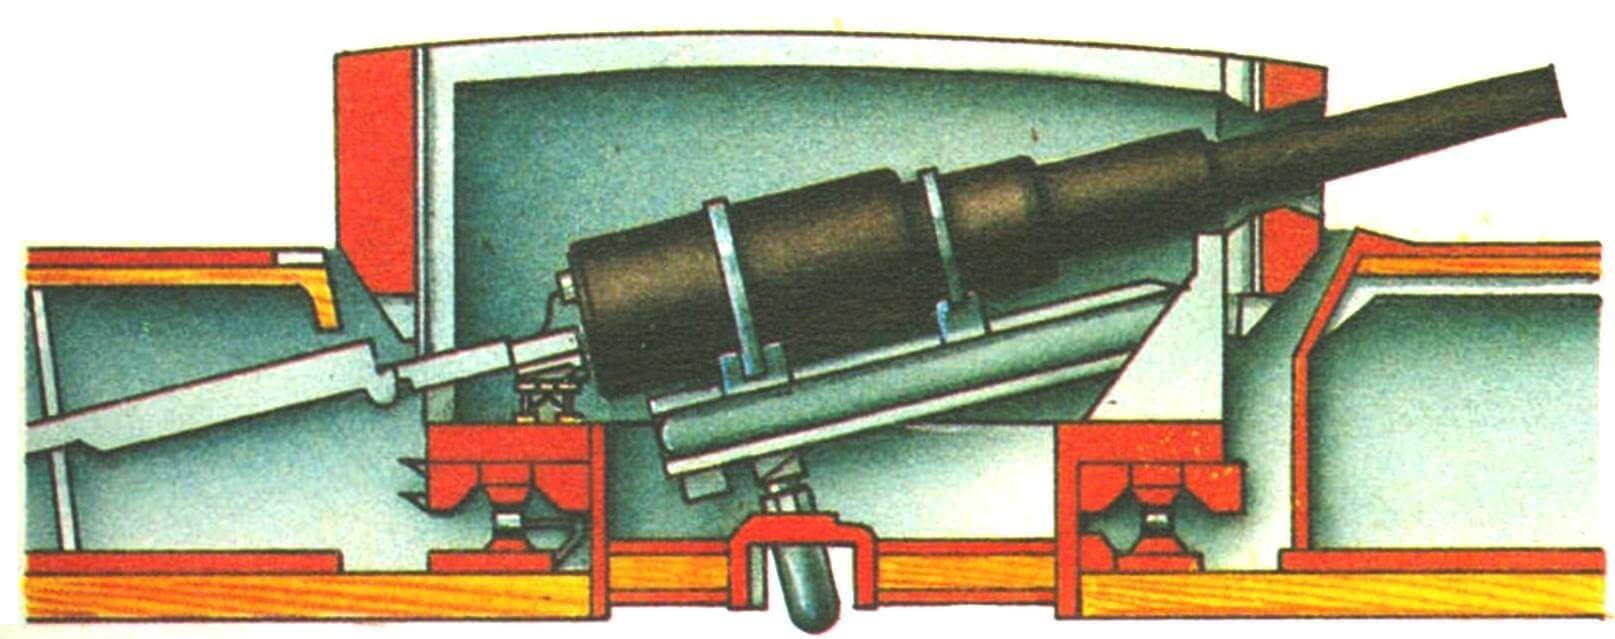 Казнозарядная башенная установка броненосца «Колоссус» (Англия, 1886 г.).